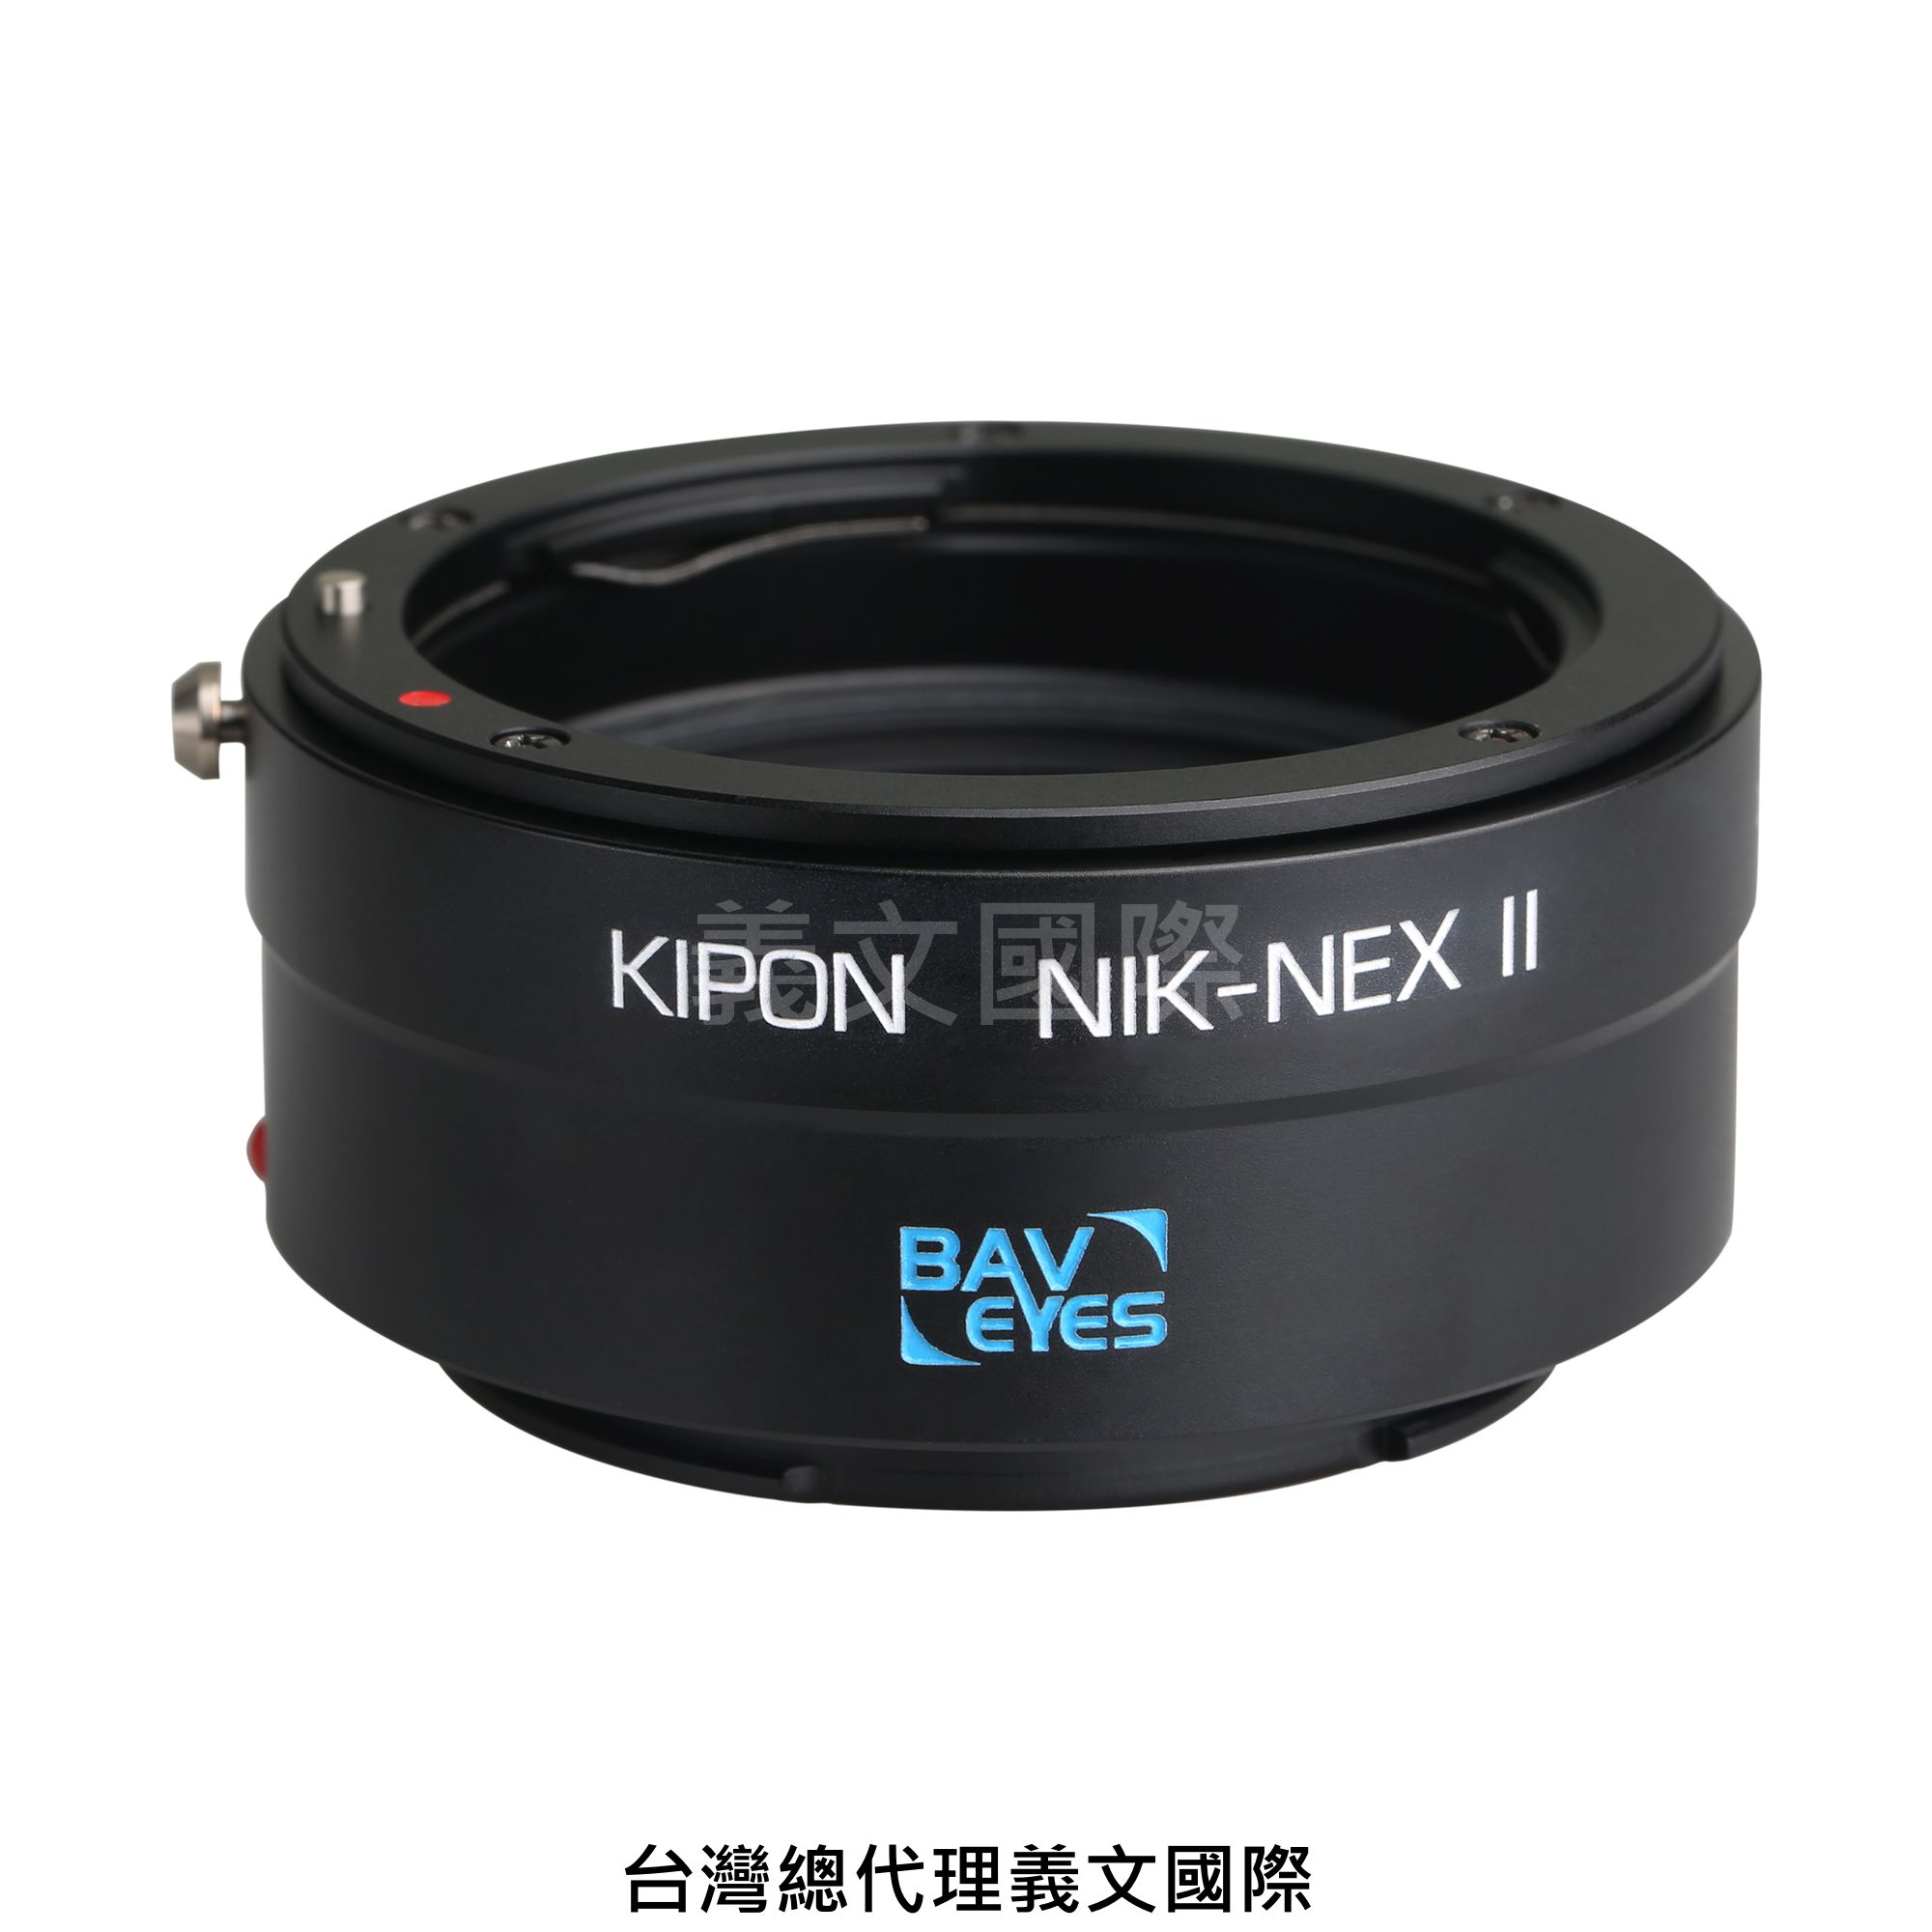 Kipon轉接環專賣店:Baveyes NIKON-S/E 0.7x Mark2(Sony E,Nex,索尼,尼康,減焦,A7R3,A72,A7,A6500) 0